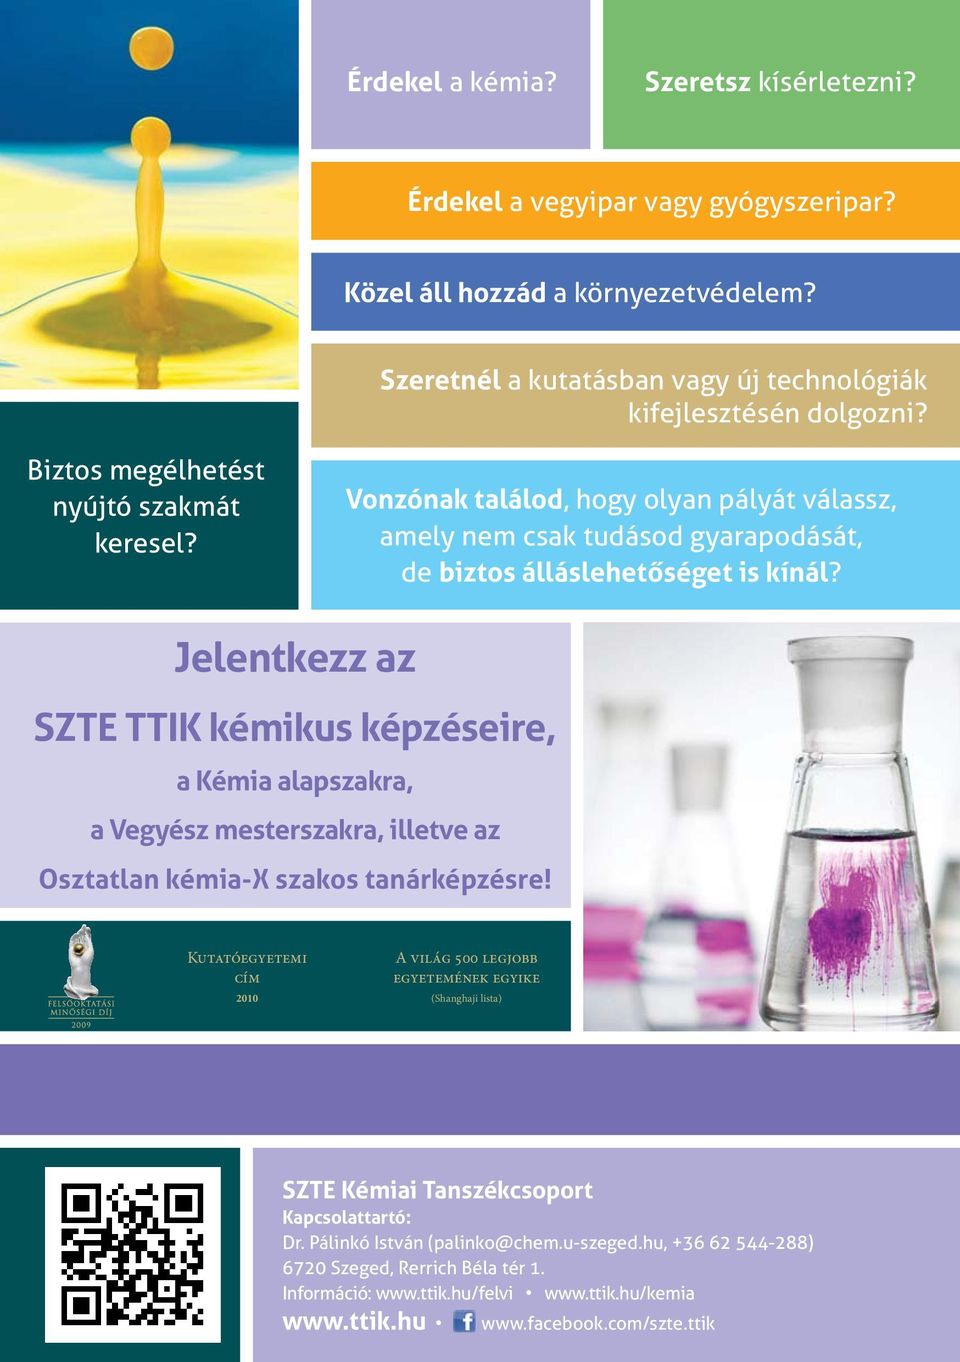 Jelentkezz az SZTE TTIK kémikus képzéseire, a Kémia alapszakra, a Vegyész mesterszakra, illetve az Osztatlan kémia-x szakos tanárképzésre!